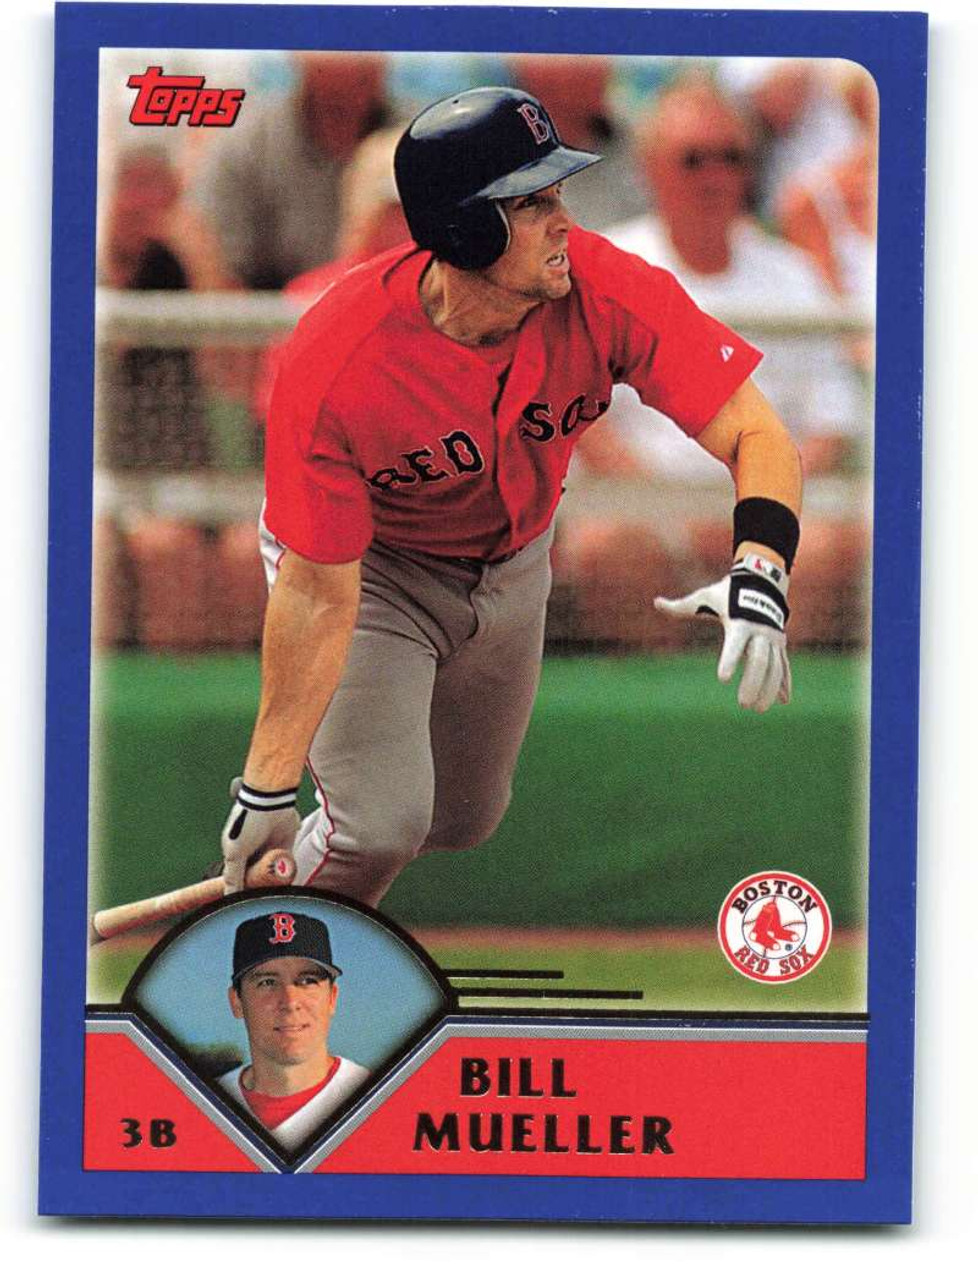  1986 Topps Baseball #443 Bill Buckner Boston Red Sox